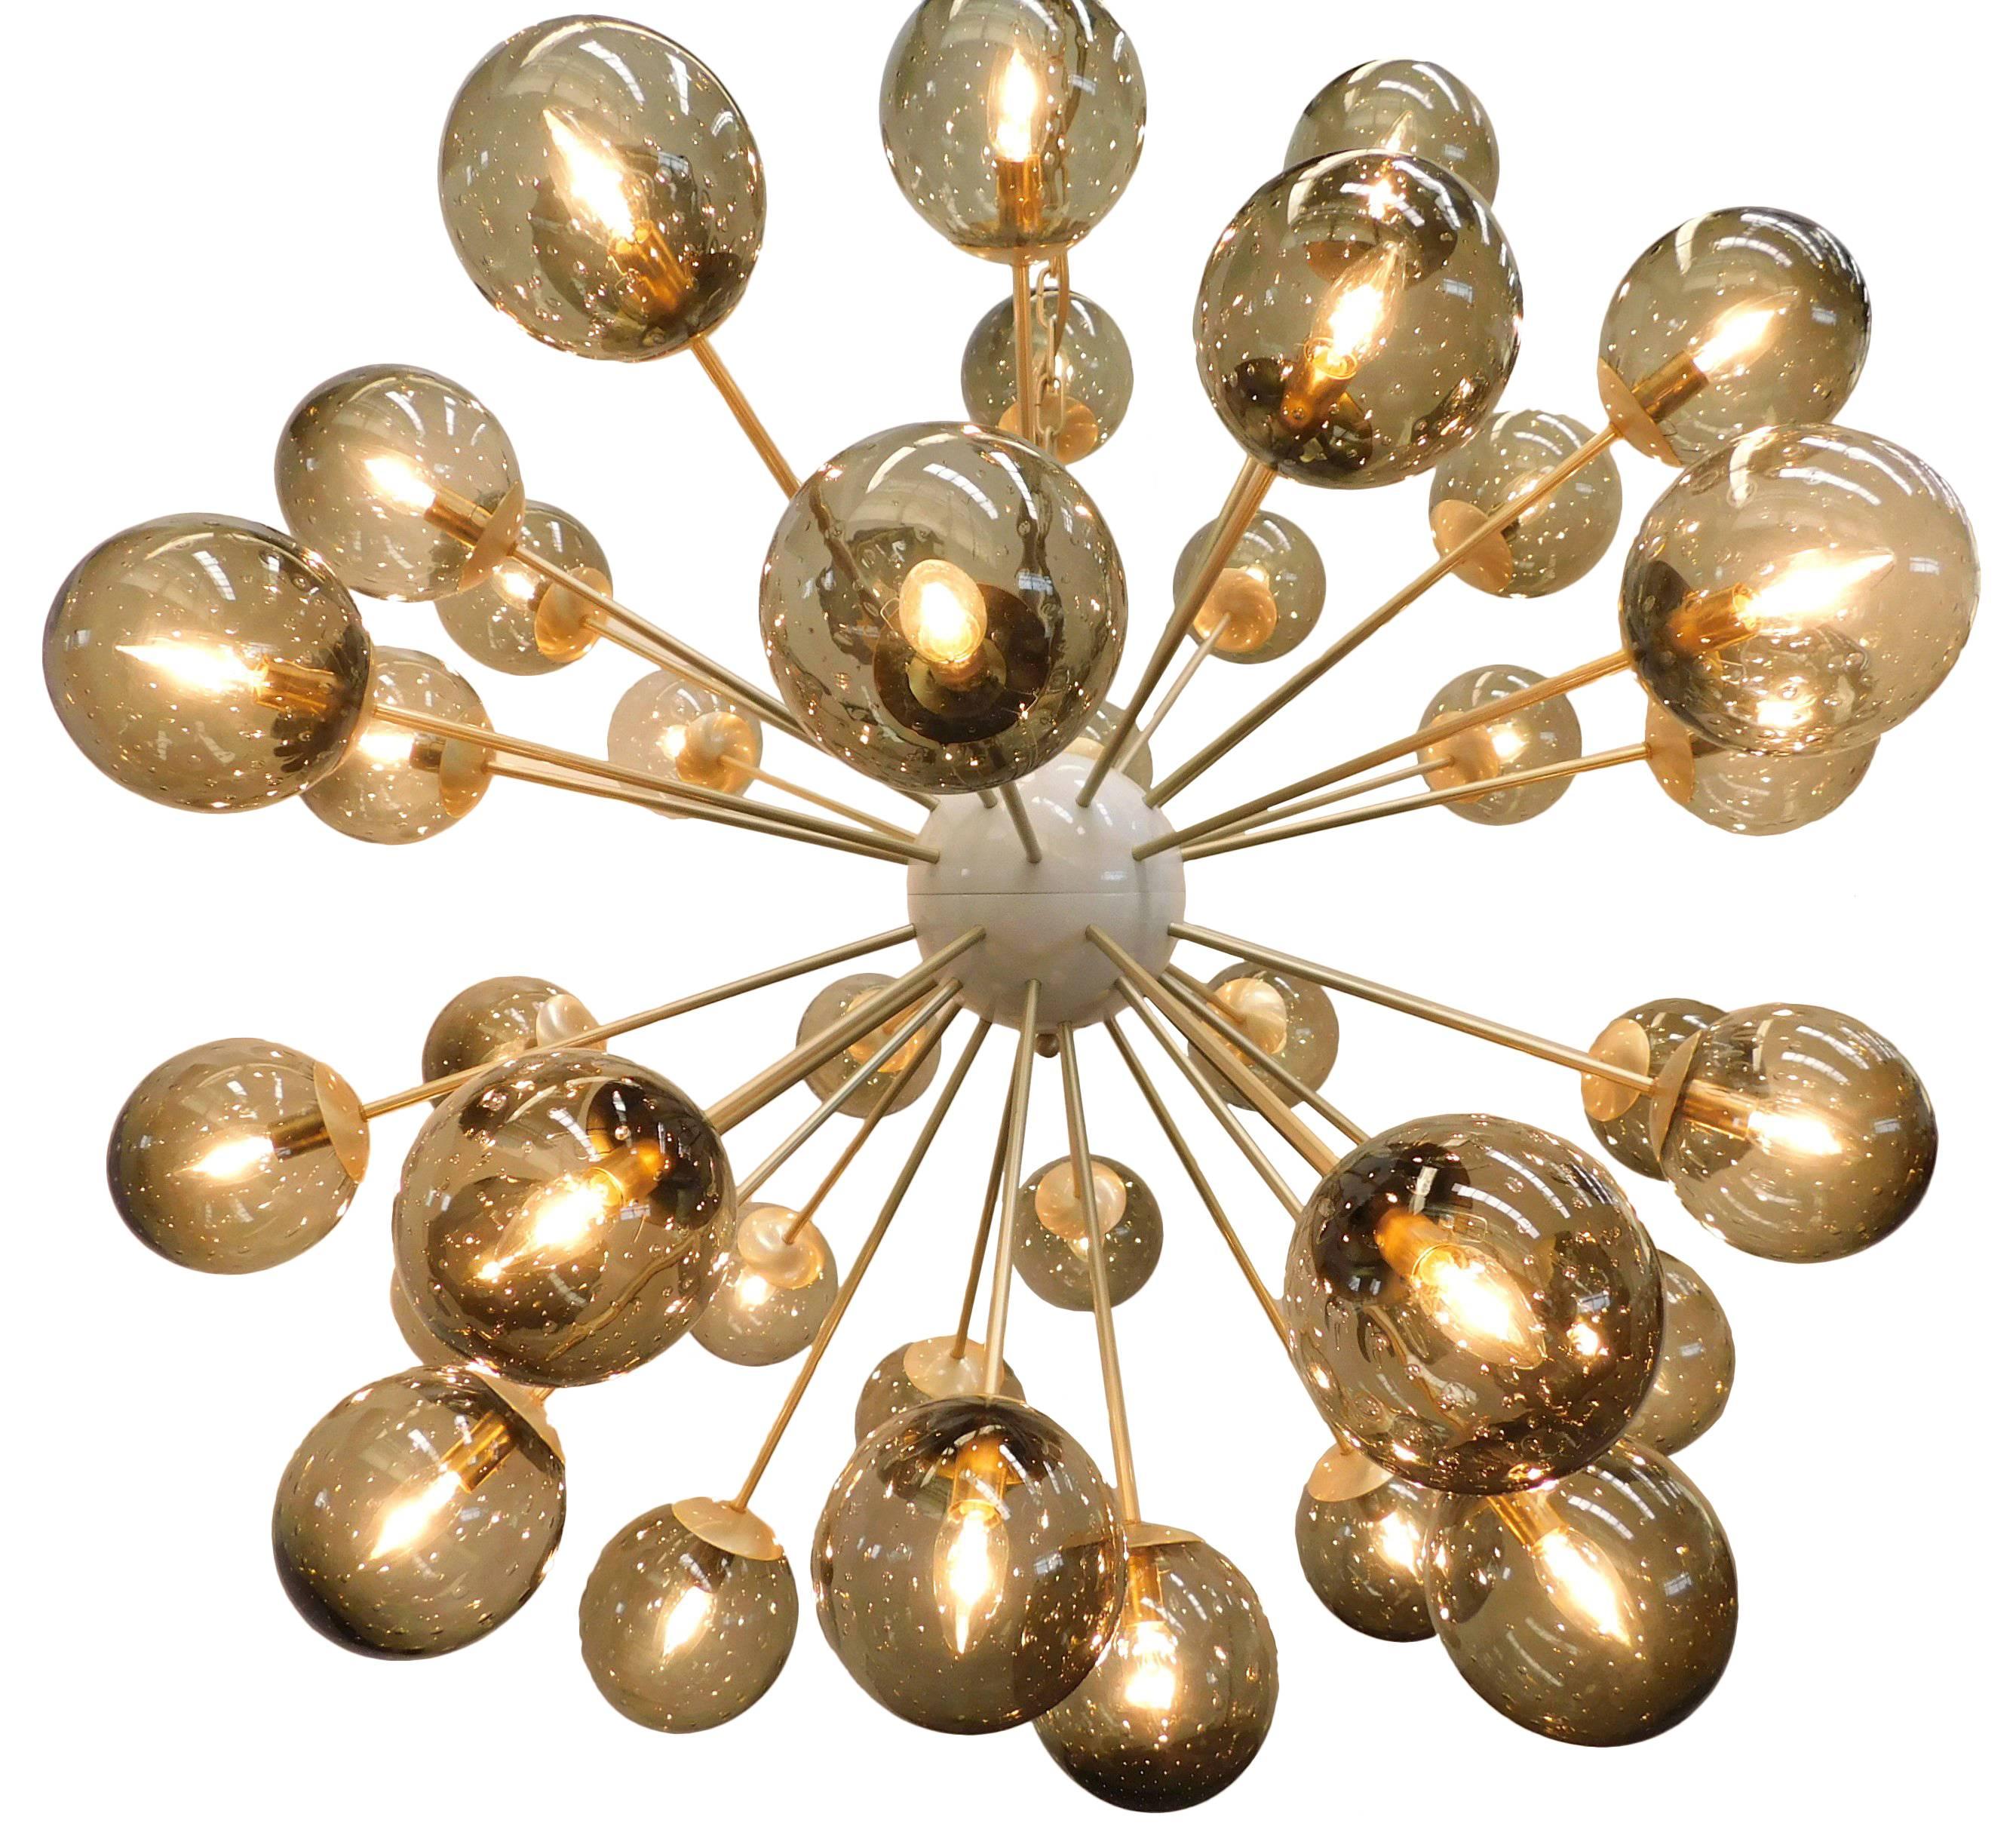 Lustre Sputnik italien avec 40 globes en verre de Murano montés sur une monture en laiton / Design by Fabio Bergomi for Fabio Ltd / Made in Italy
40 lampes / type E12 ou E14 / max 40W chacune
Dimensions : diamètre 49 pouces / hauteur 49 pouces plus